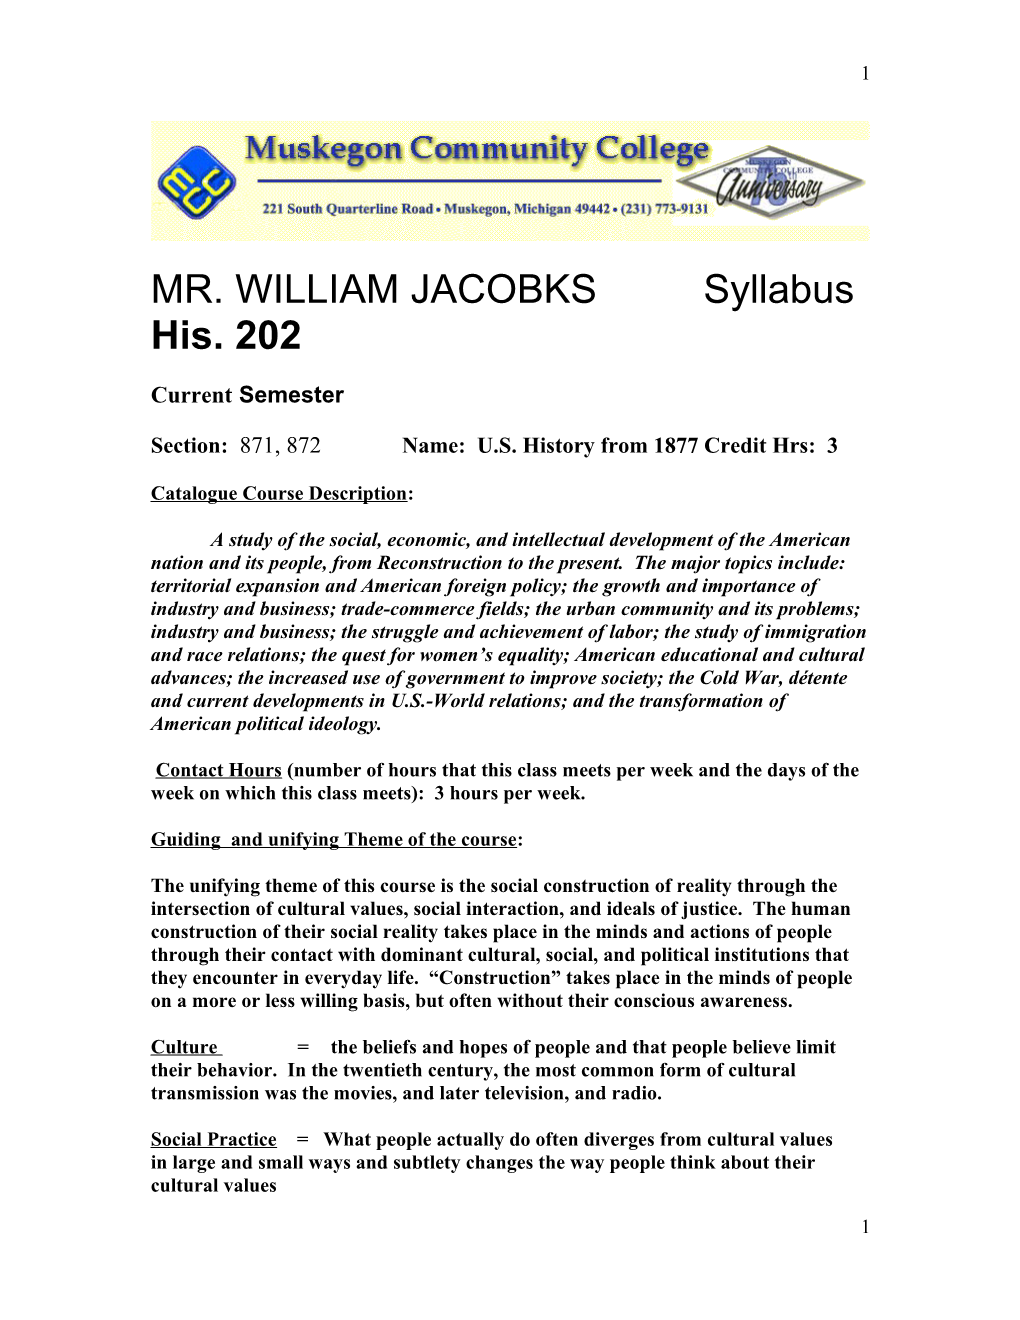 MR. WILLIAM JACOBKS Syllabus His. 202